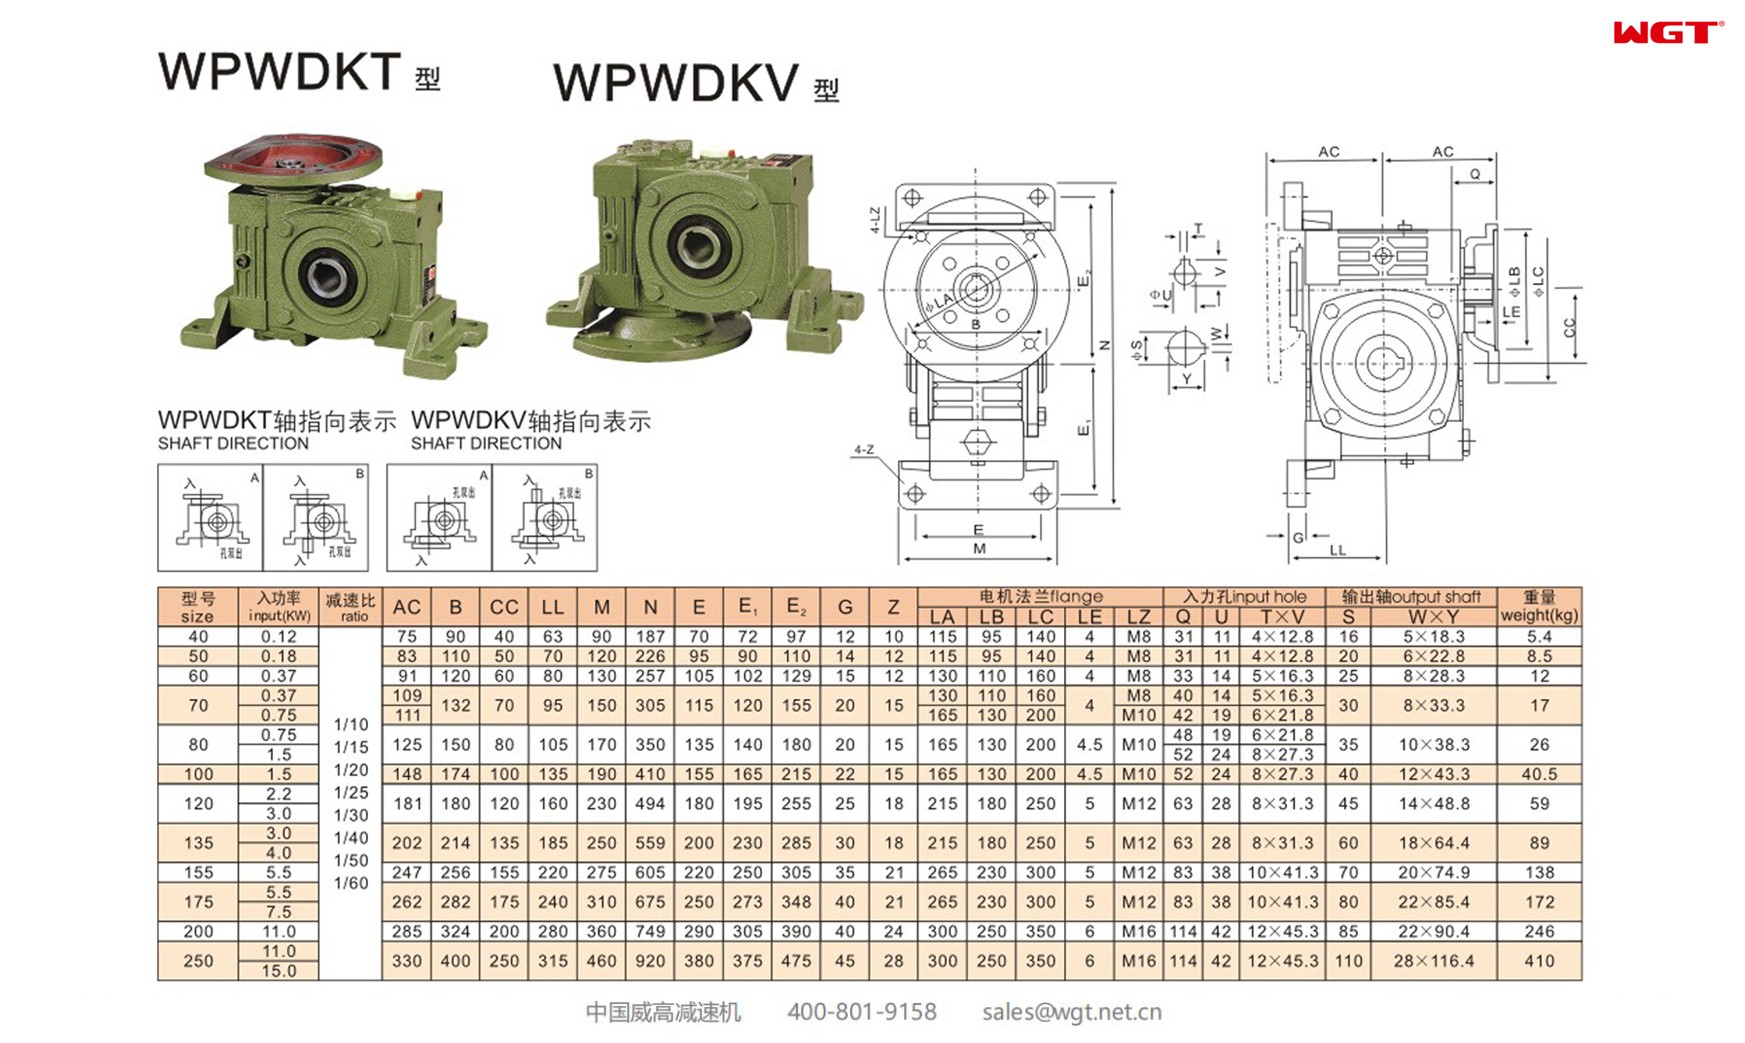 WPWDKT120 worm gear reducer universal speed reducer 